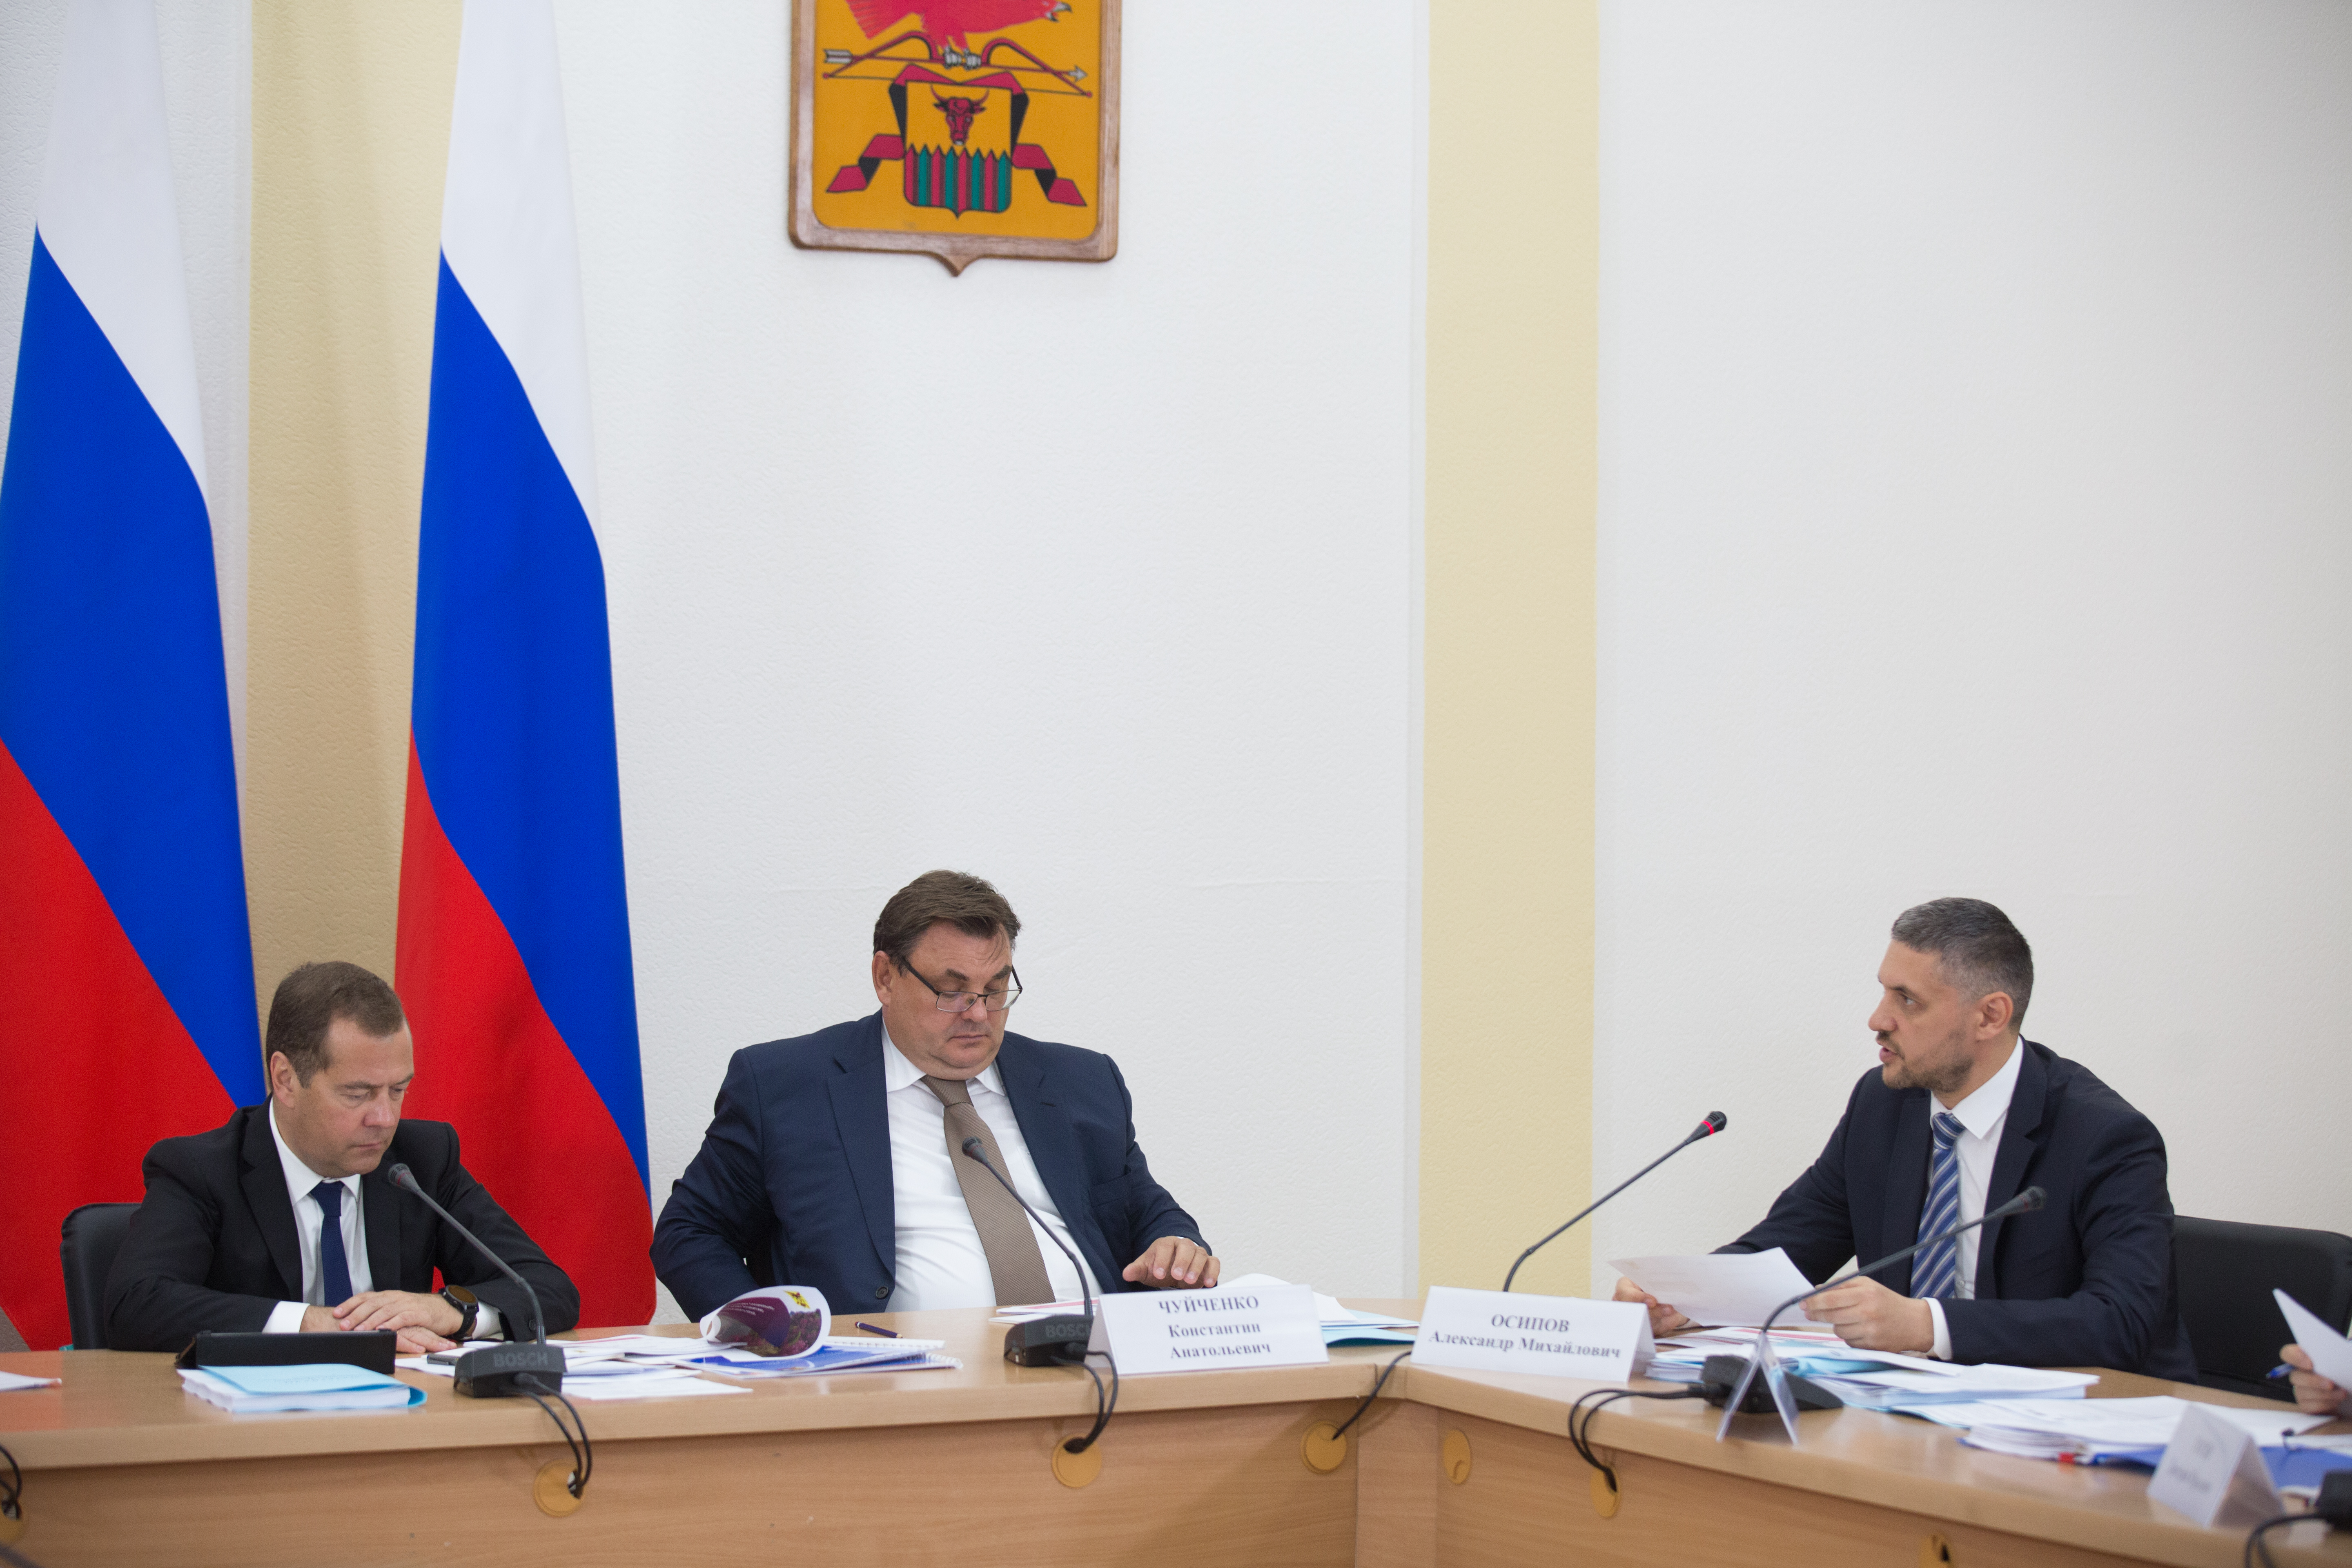 Дмитрий Медведев подписал постановление правительства РФ о создании территории опережающего развития «Забайкалье»